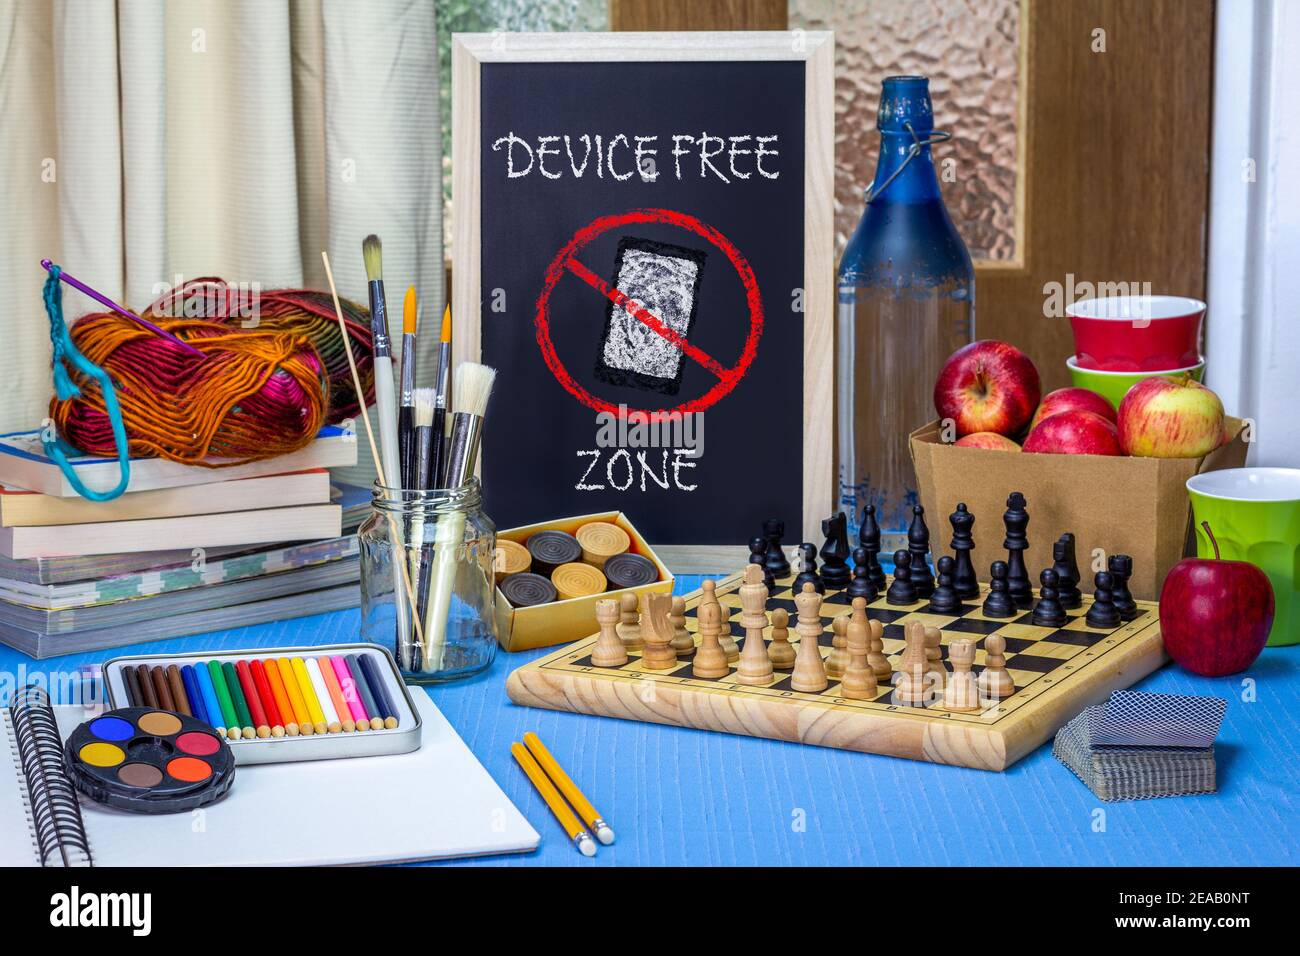 Gerät Freie Zone Kreidetafel auf Tisch mit Spielen, Kunstmaterialien, Büchern und Schachbrett. Förderung digitaler Abschalten, um die Verbindung mit den Menschen wiederherzustellen. Stockfoto